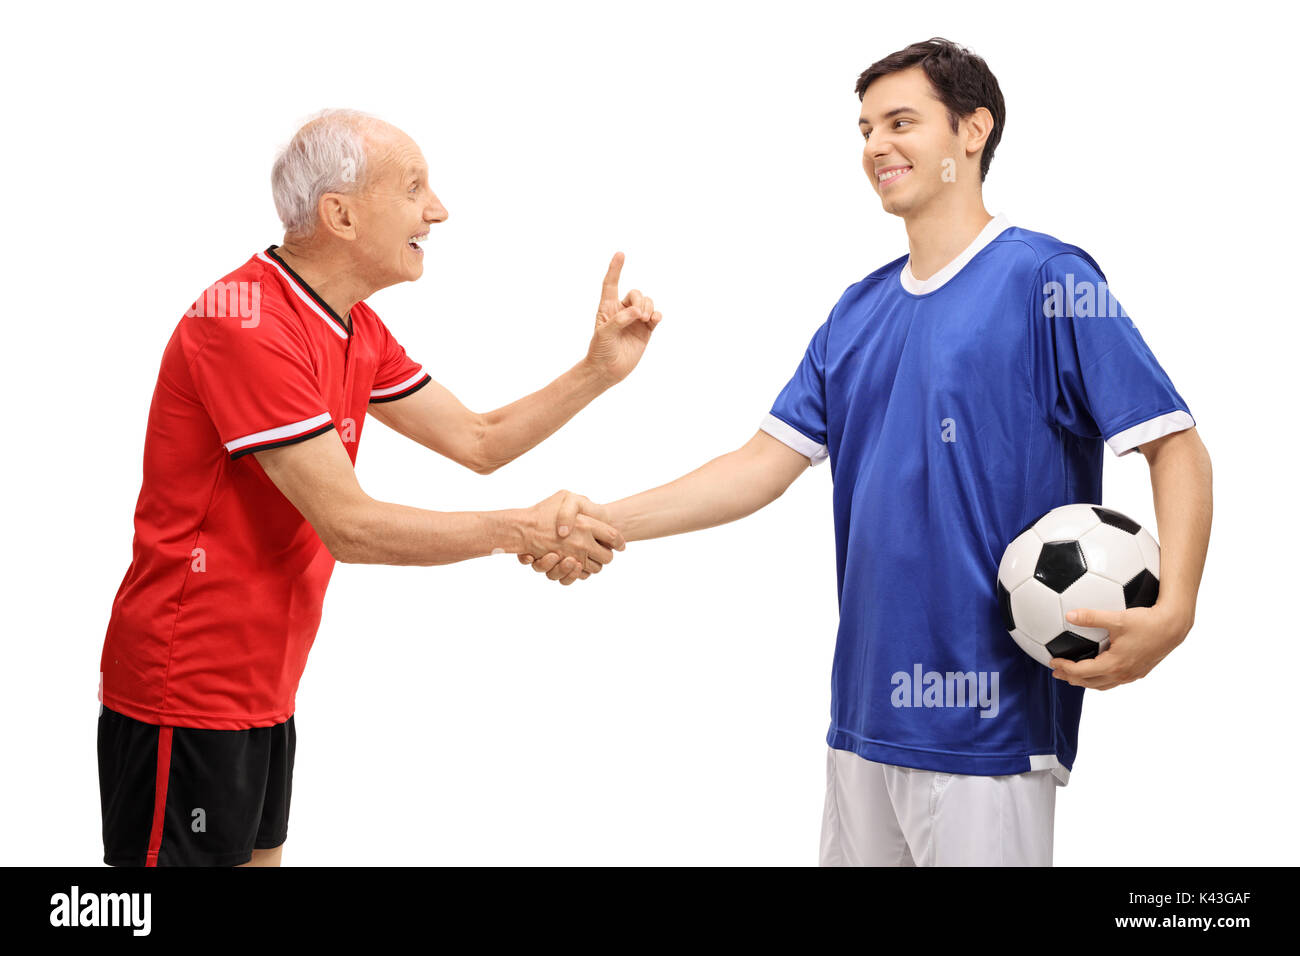 Vecchio giocatore di calcio si stringono la mano con un giovane giocatore e consigliandolo isolati su sfondo bianco Foto Stock